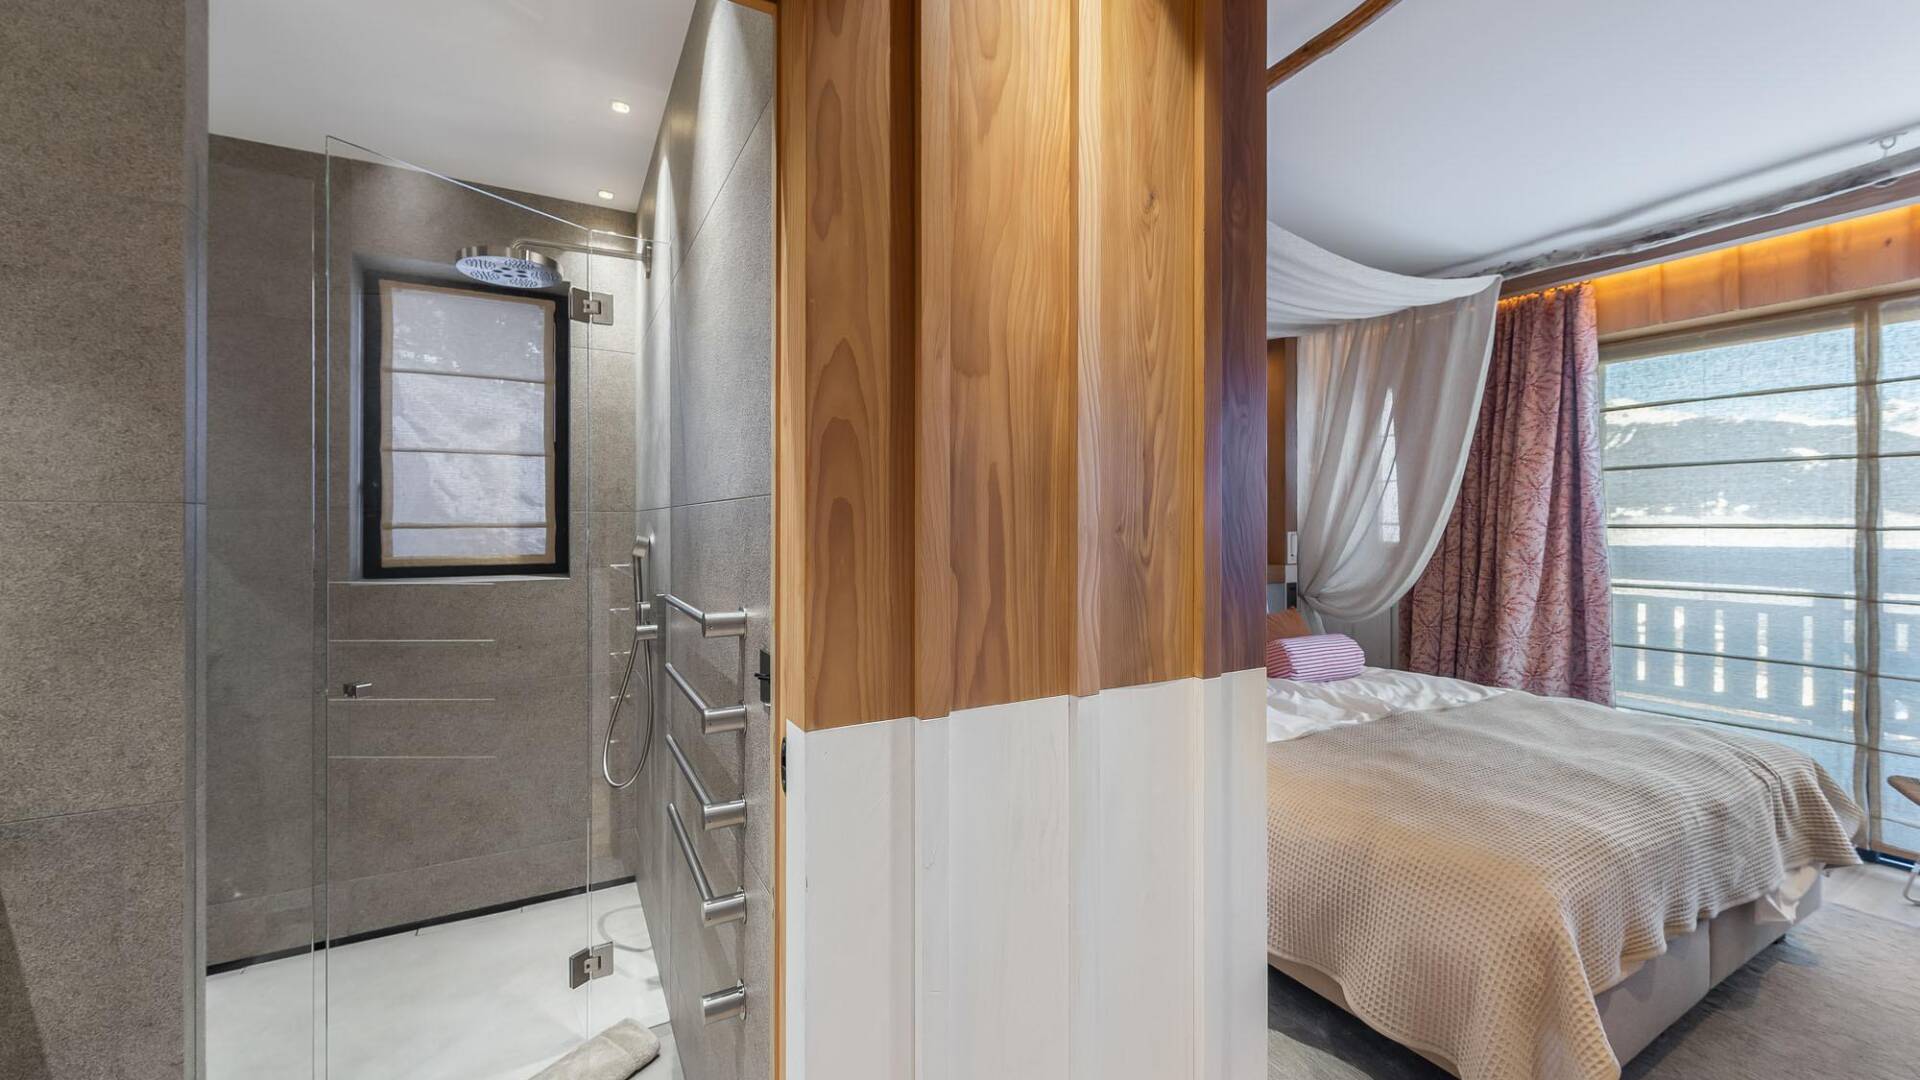 double bedroom with en suite bathroom and walk-in shower